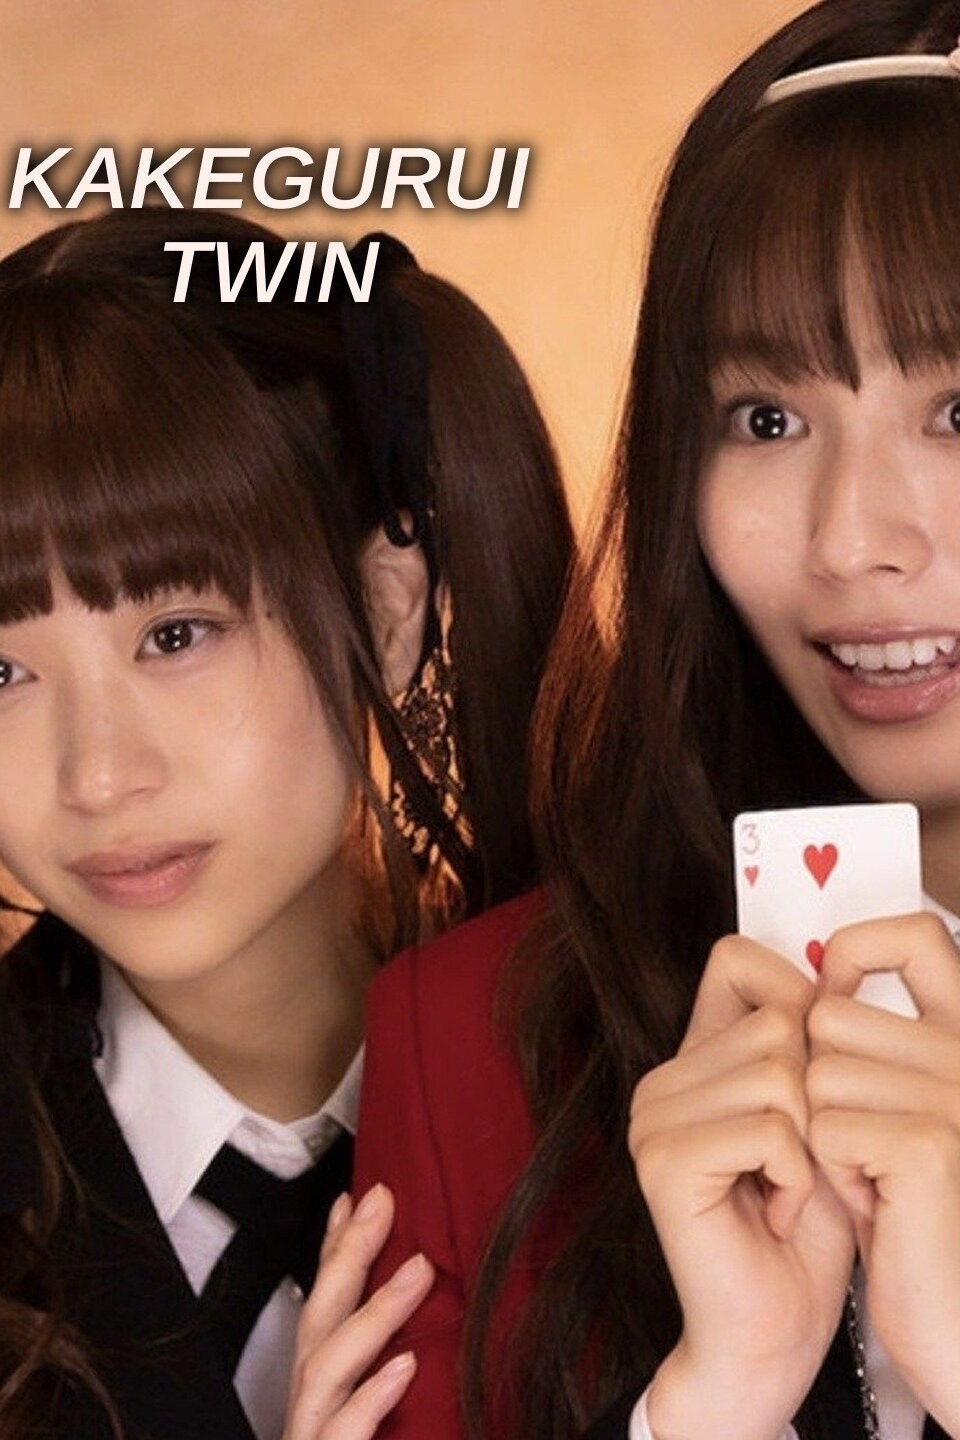 Kakegurui Twin Now Streaming on Netflix Worldwide